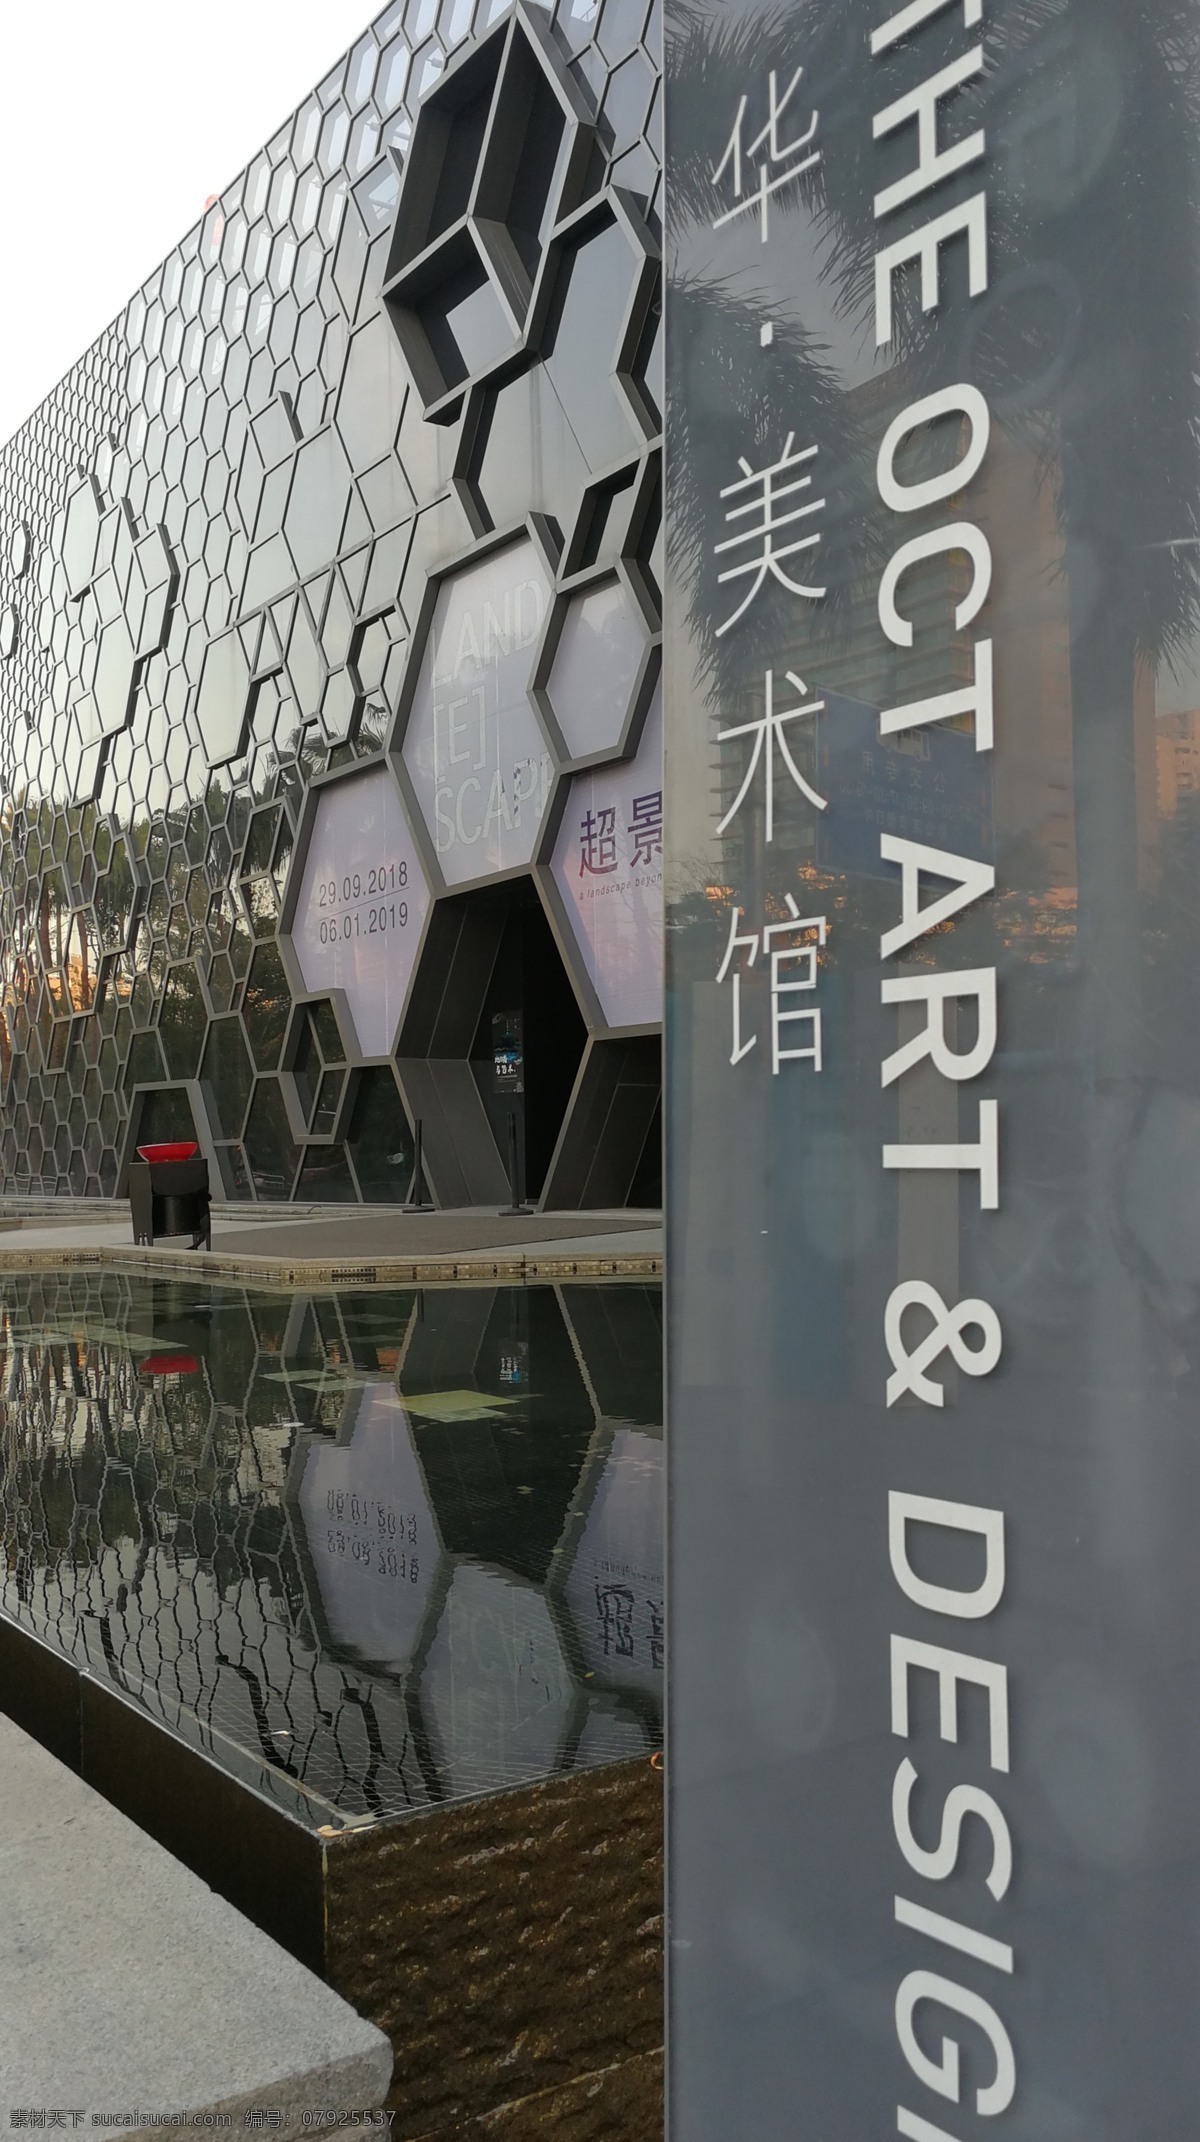 美术馆 华 深圳 艺术馆 六边形 导视牌 旅游摄影 人文景观